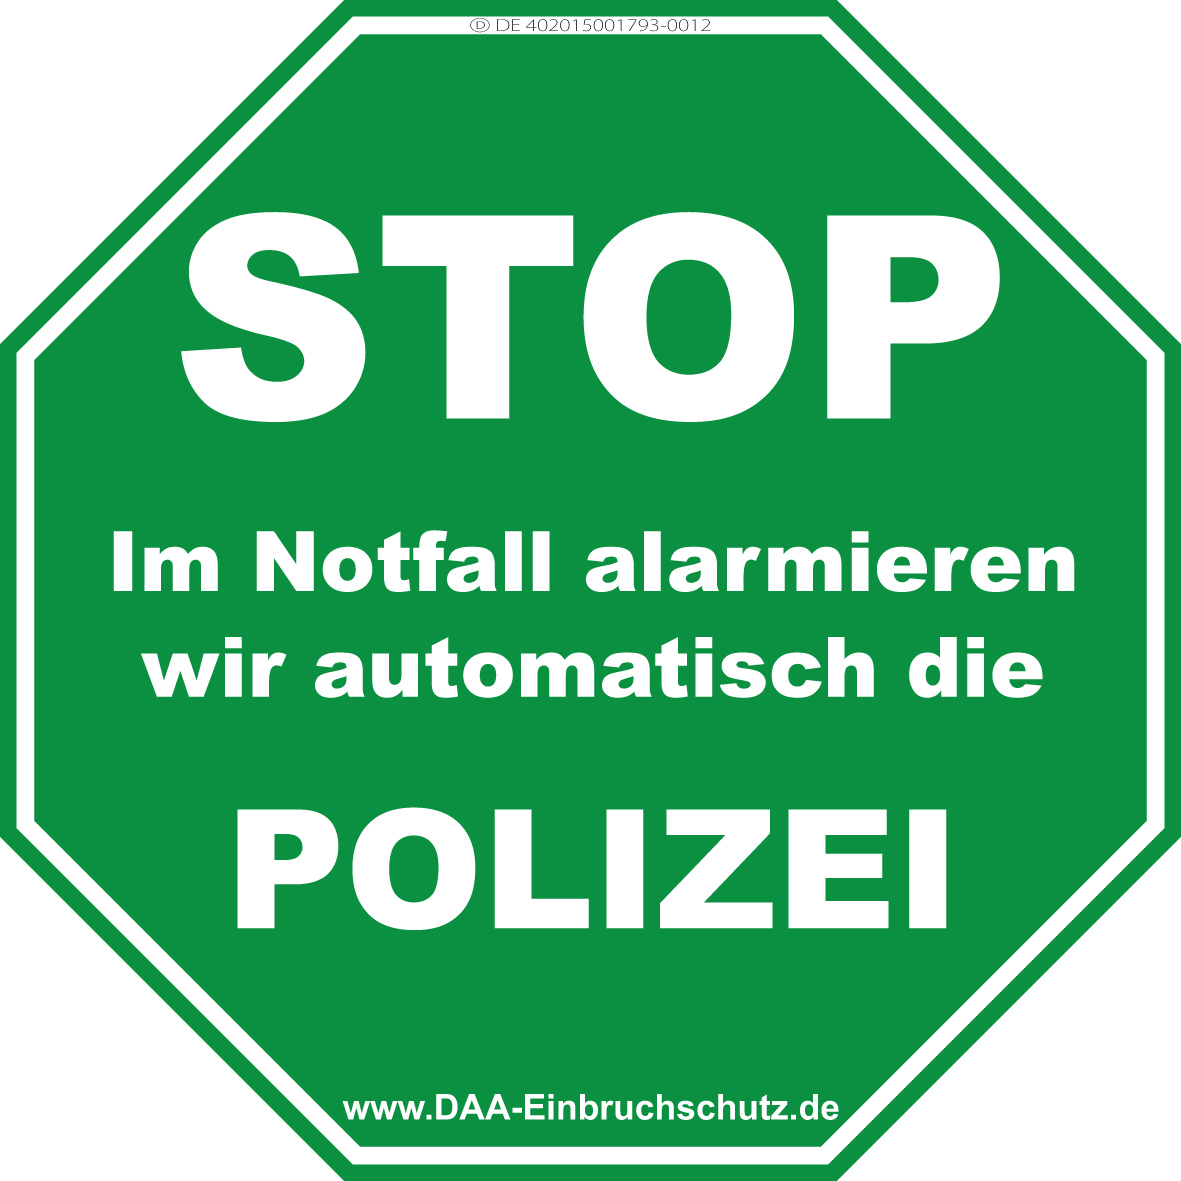 DAA-Einbruchschutz - STOP POLIZEI, Aufkleber, Warnschild